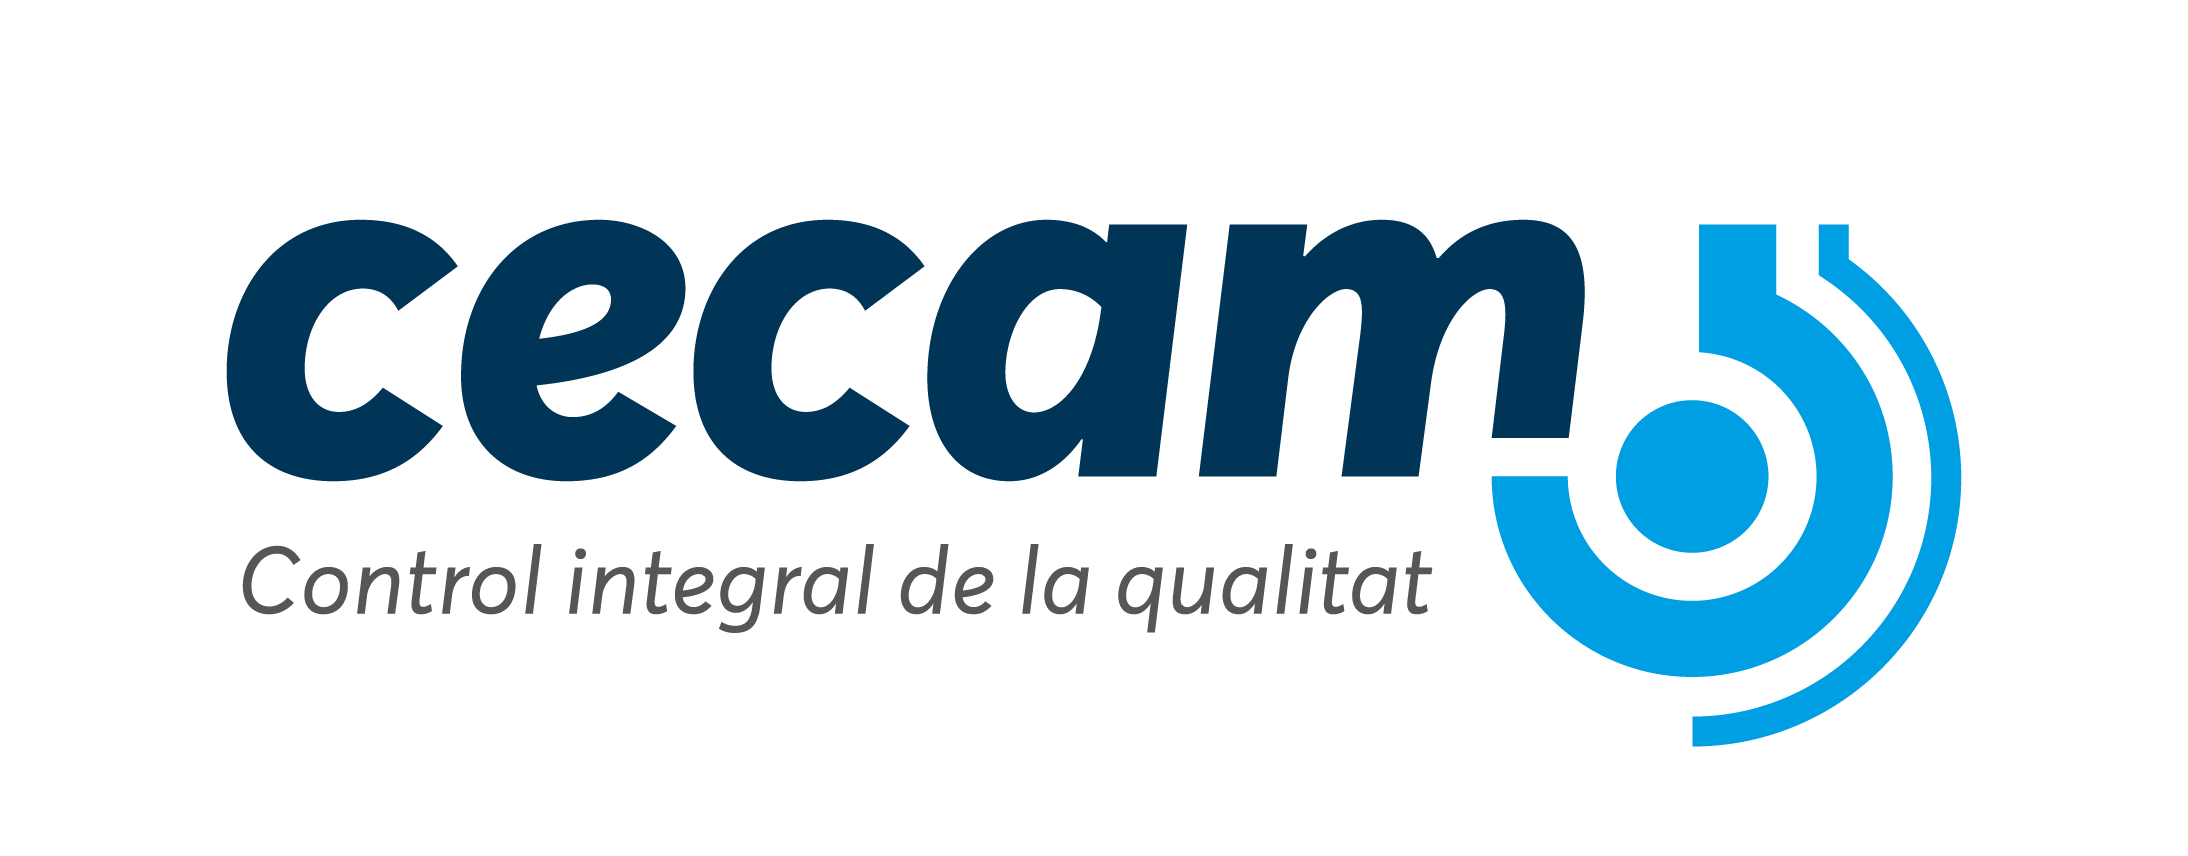 Logotip CECAM